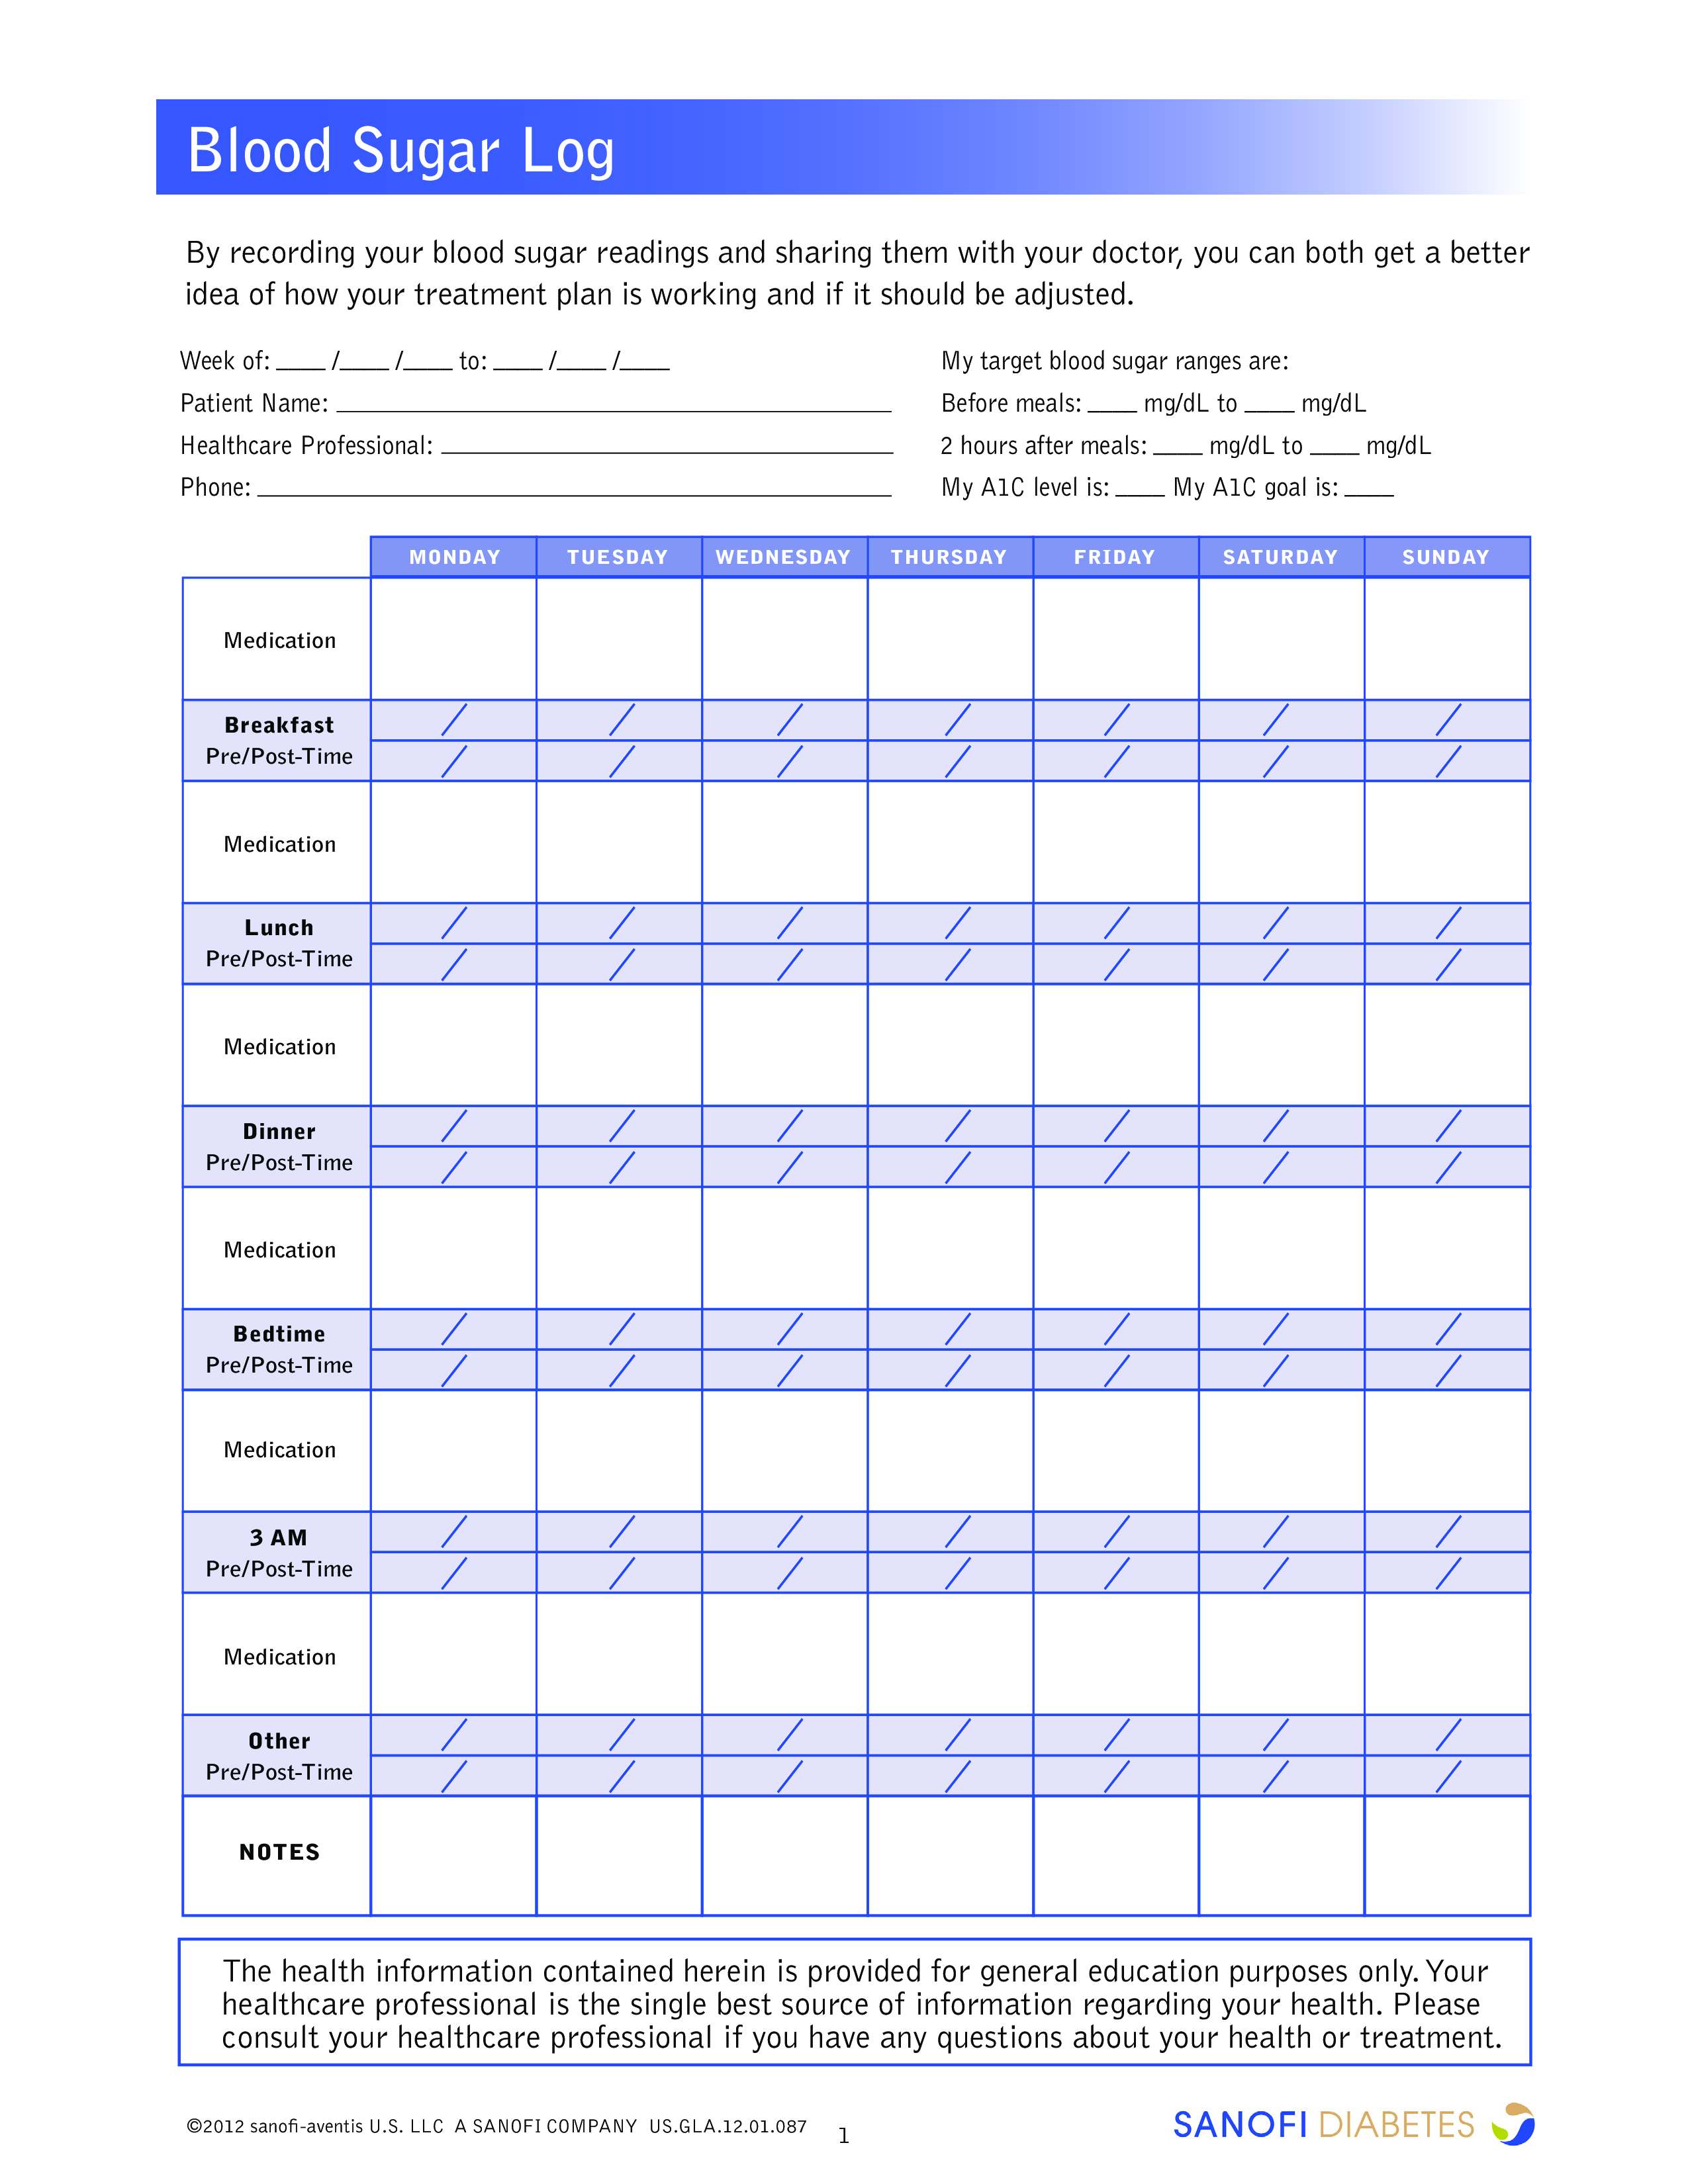 free-printable-blood-sugar-log-sheet-printable-templates